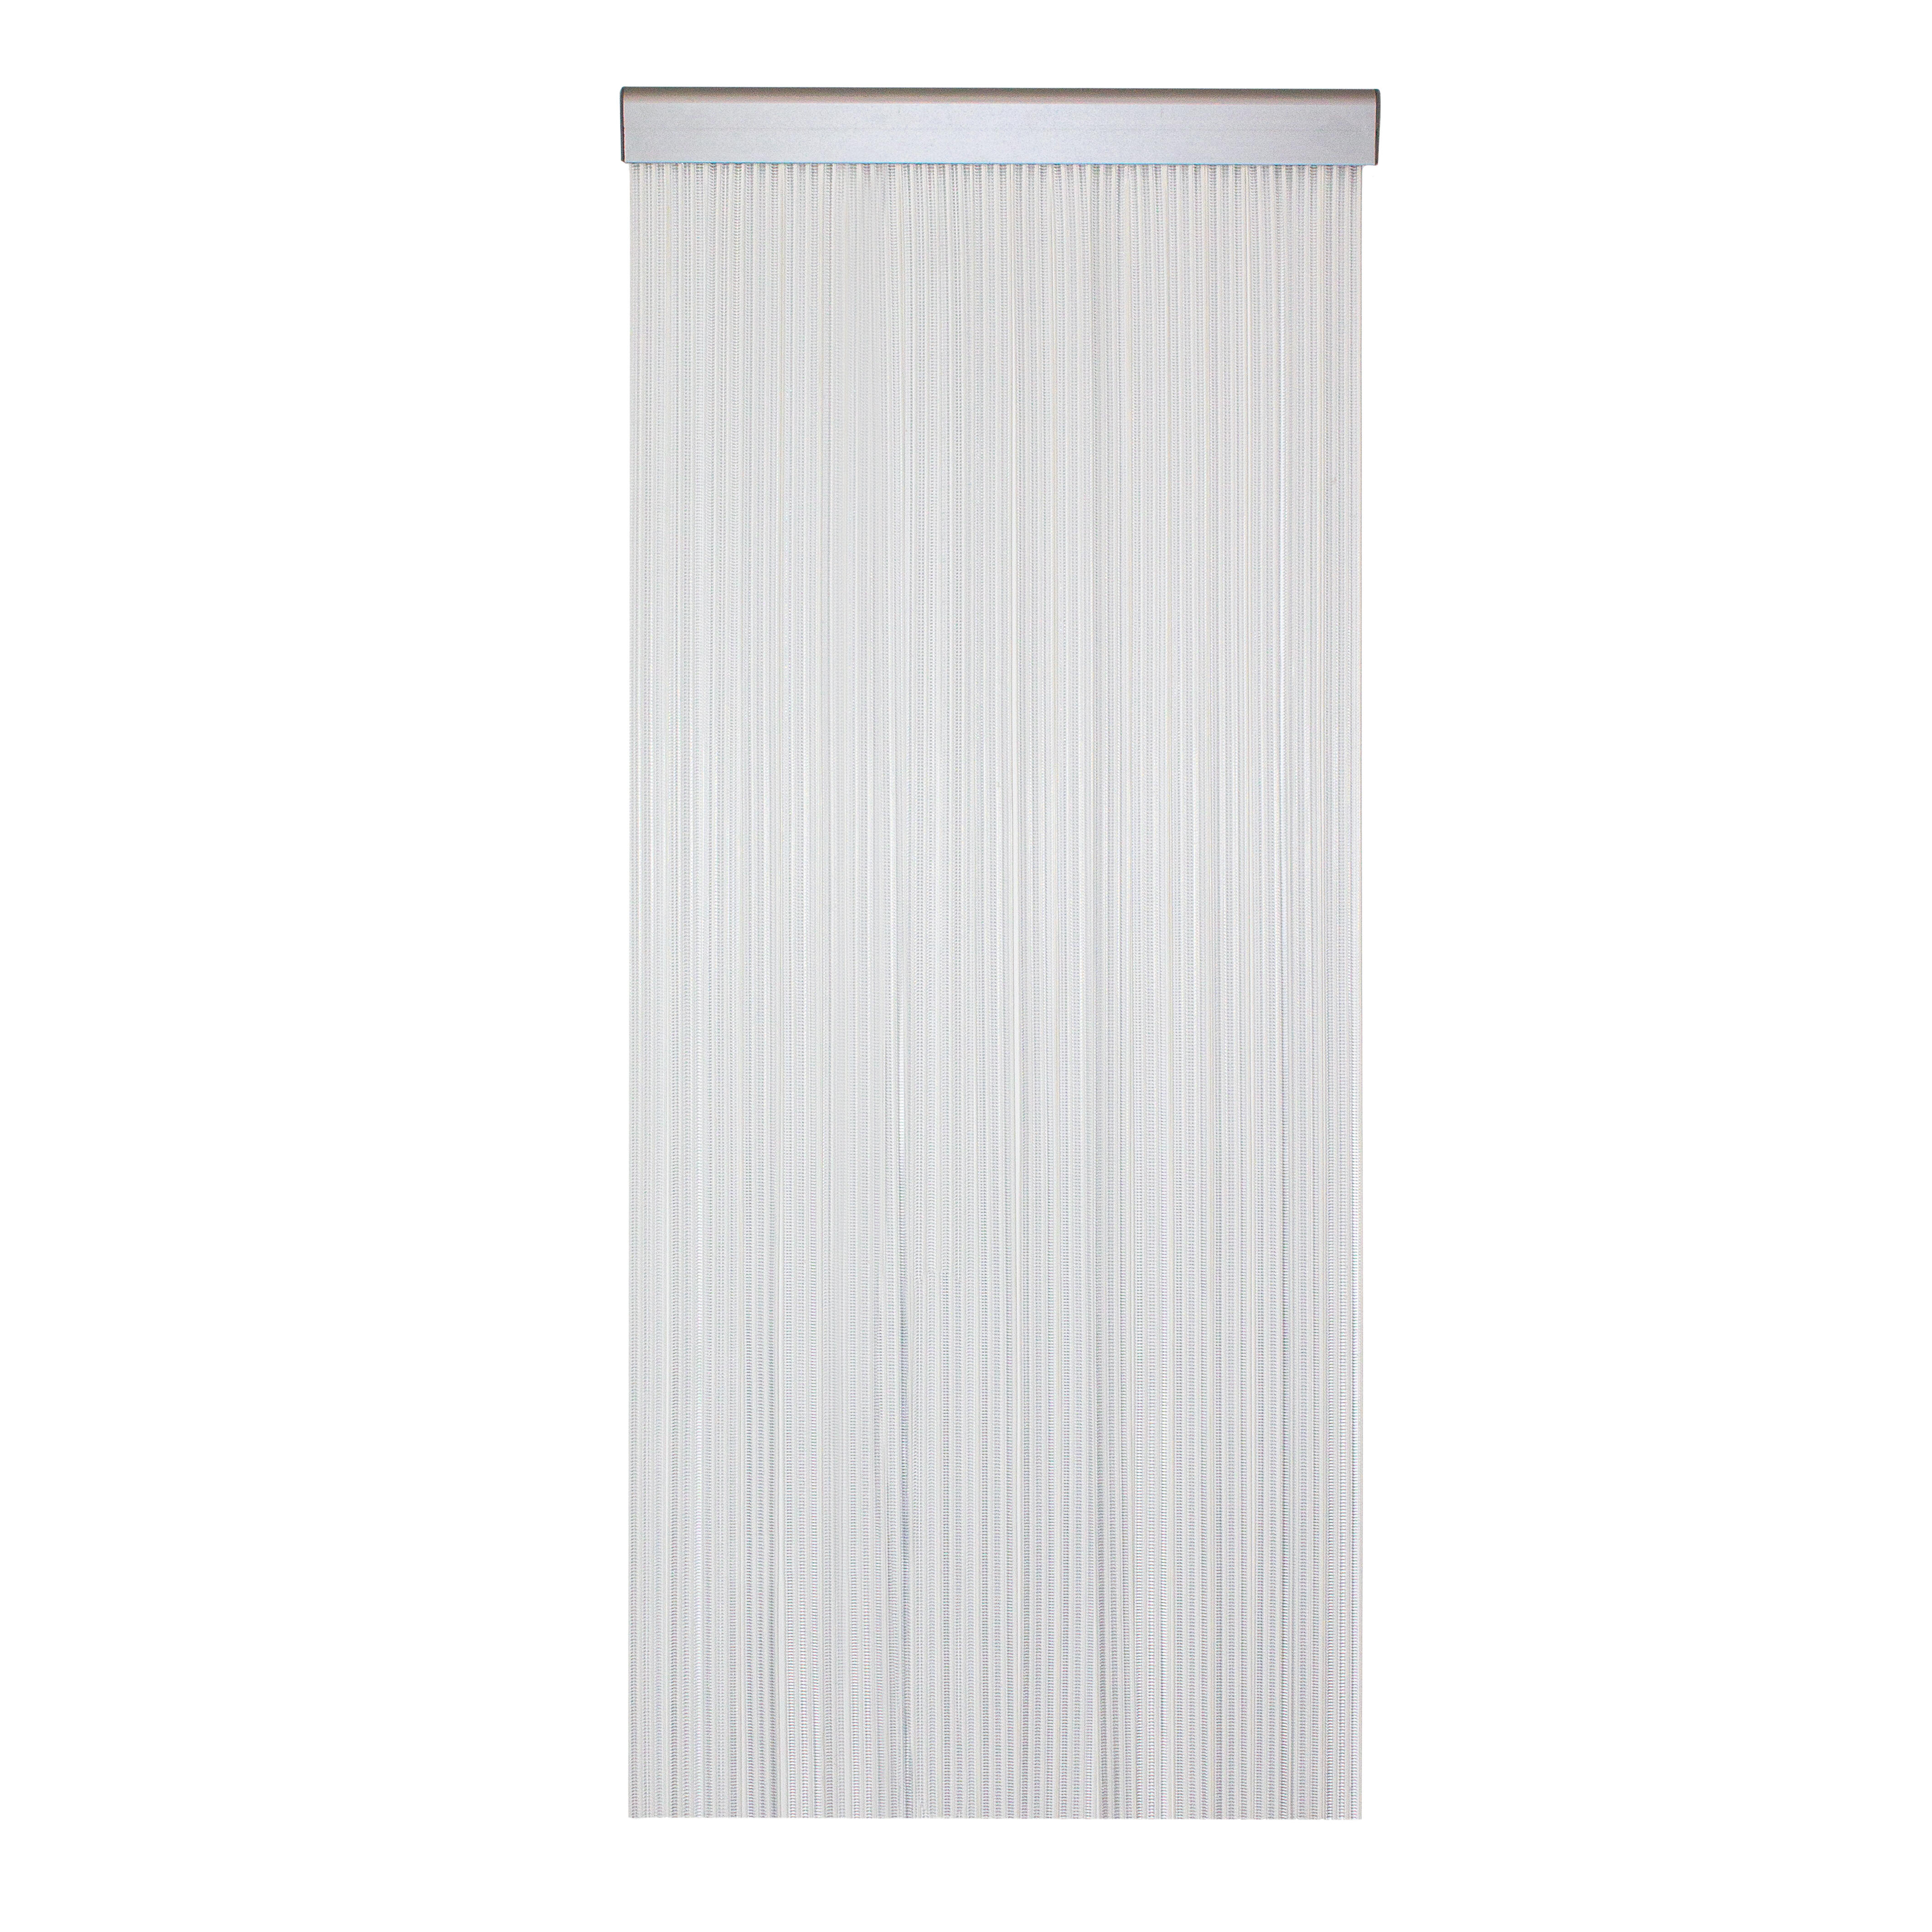 Cortina de puerta con motivo liso mijares blanco de 90x210 cm